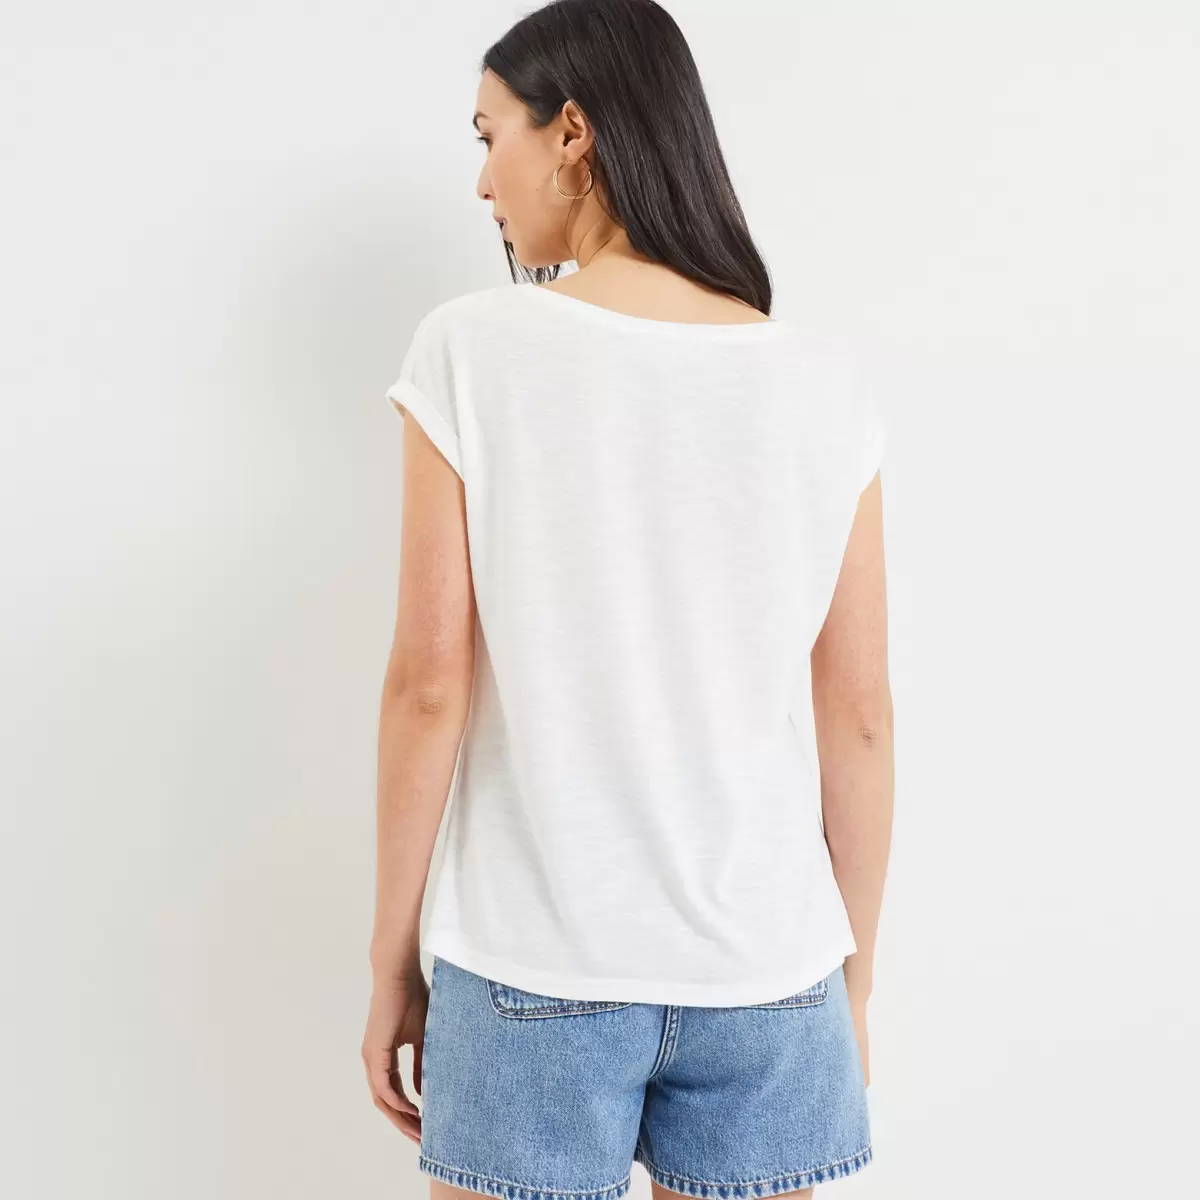 T-Shirt Imprimé Et Sequins Femme Femme Blanc Casse T-Shirts & Tops Prix Promotionnel Grain De Malic - 1